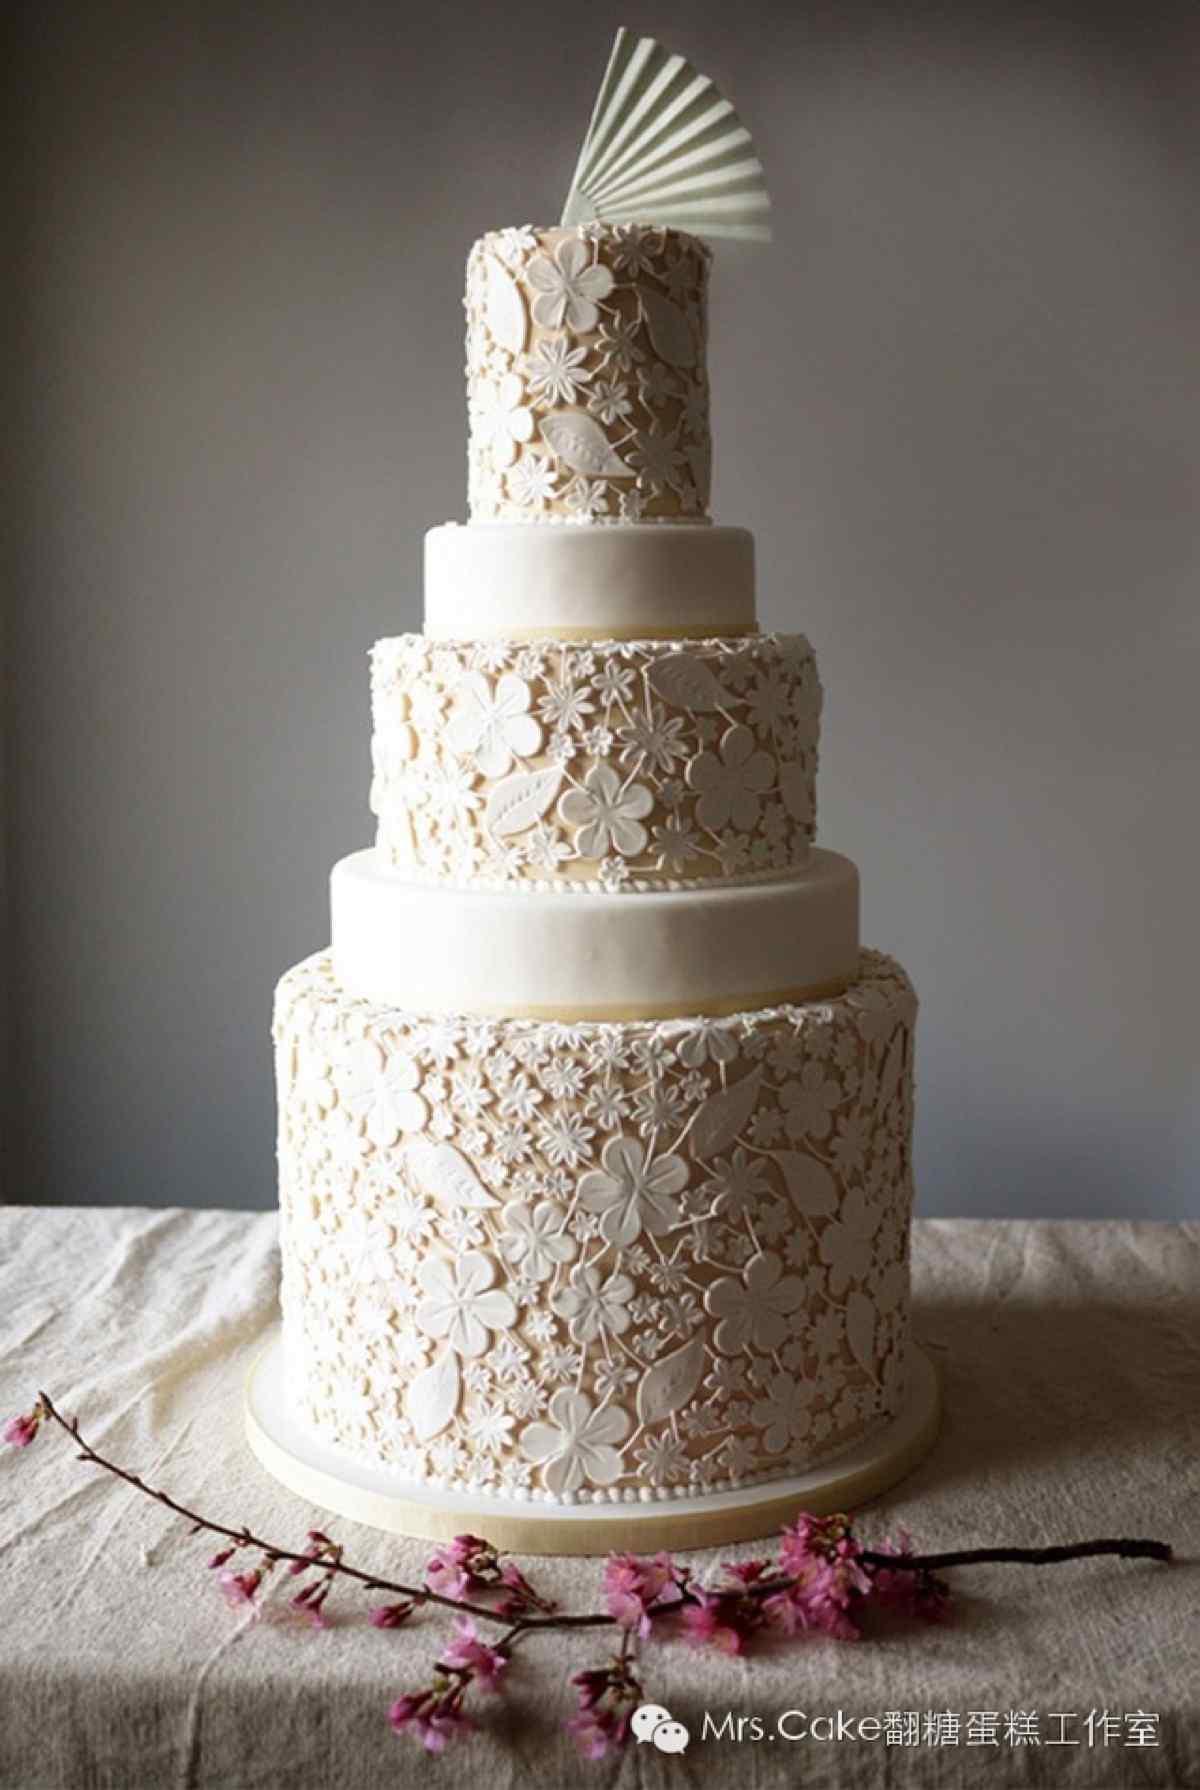 翻糖蛋糕创意精致纯白镂空雕花手机壁纸